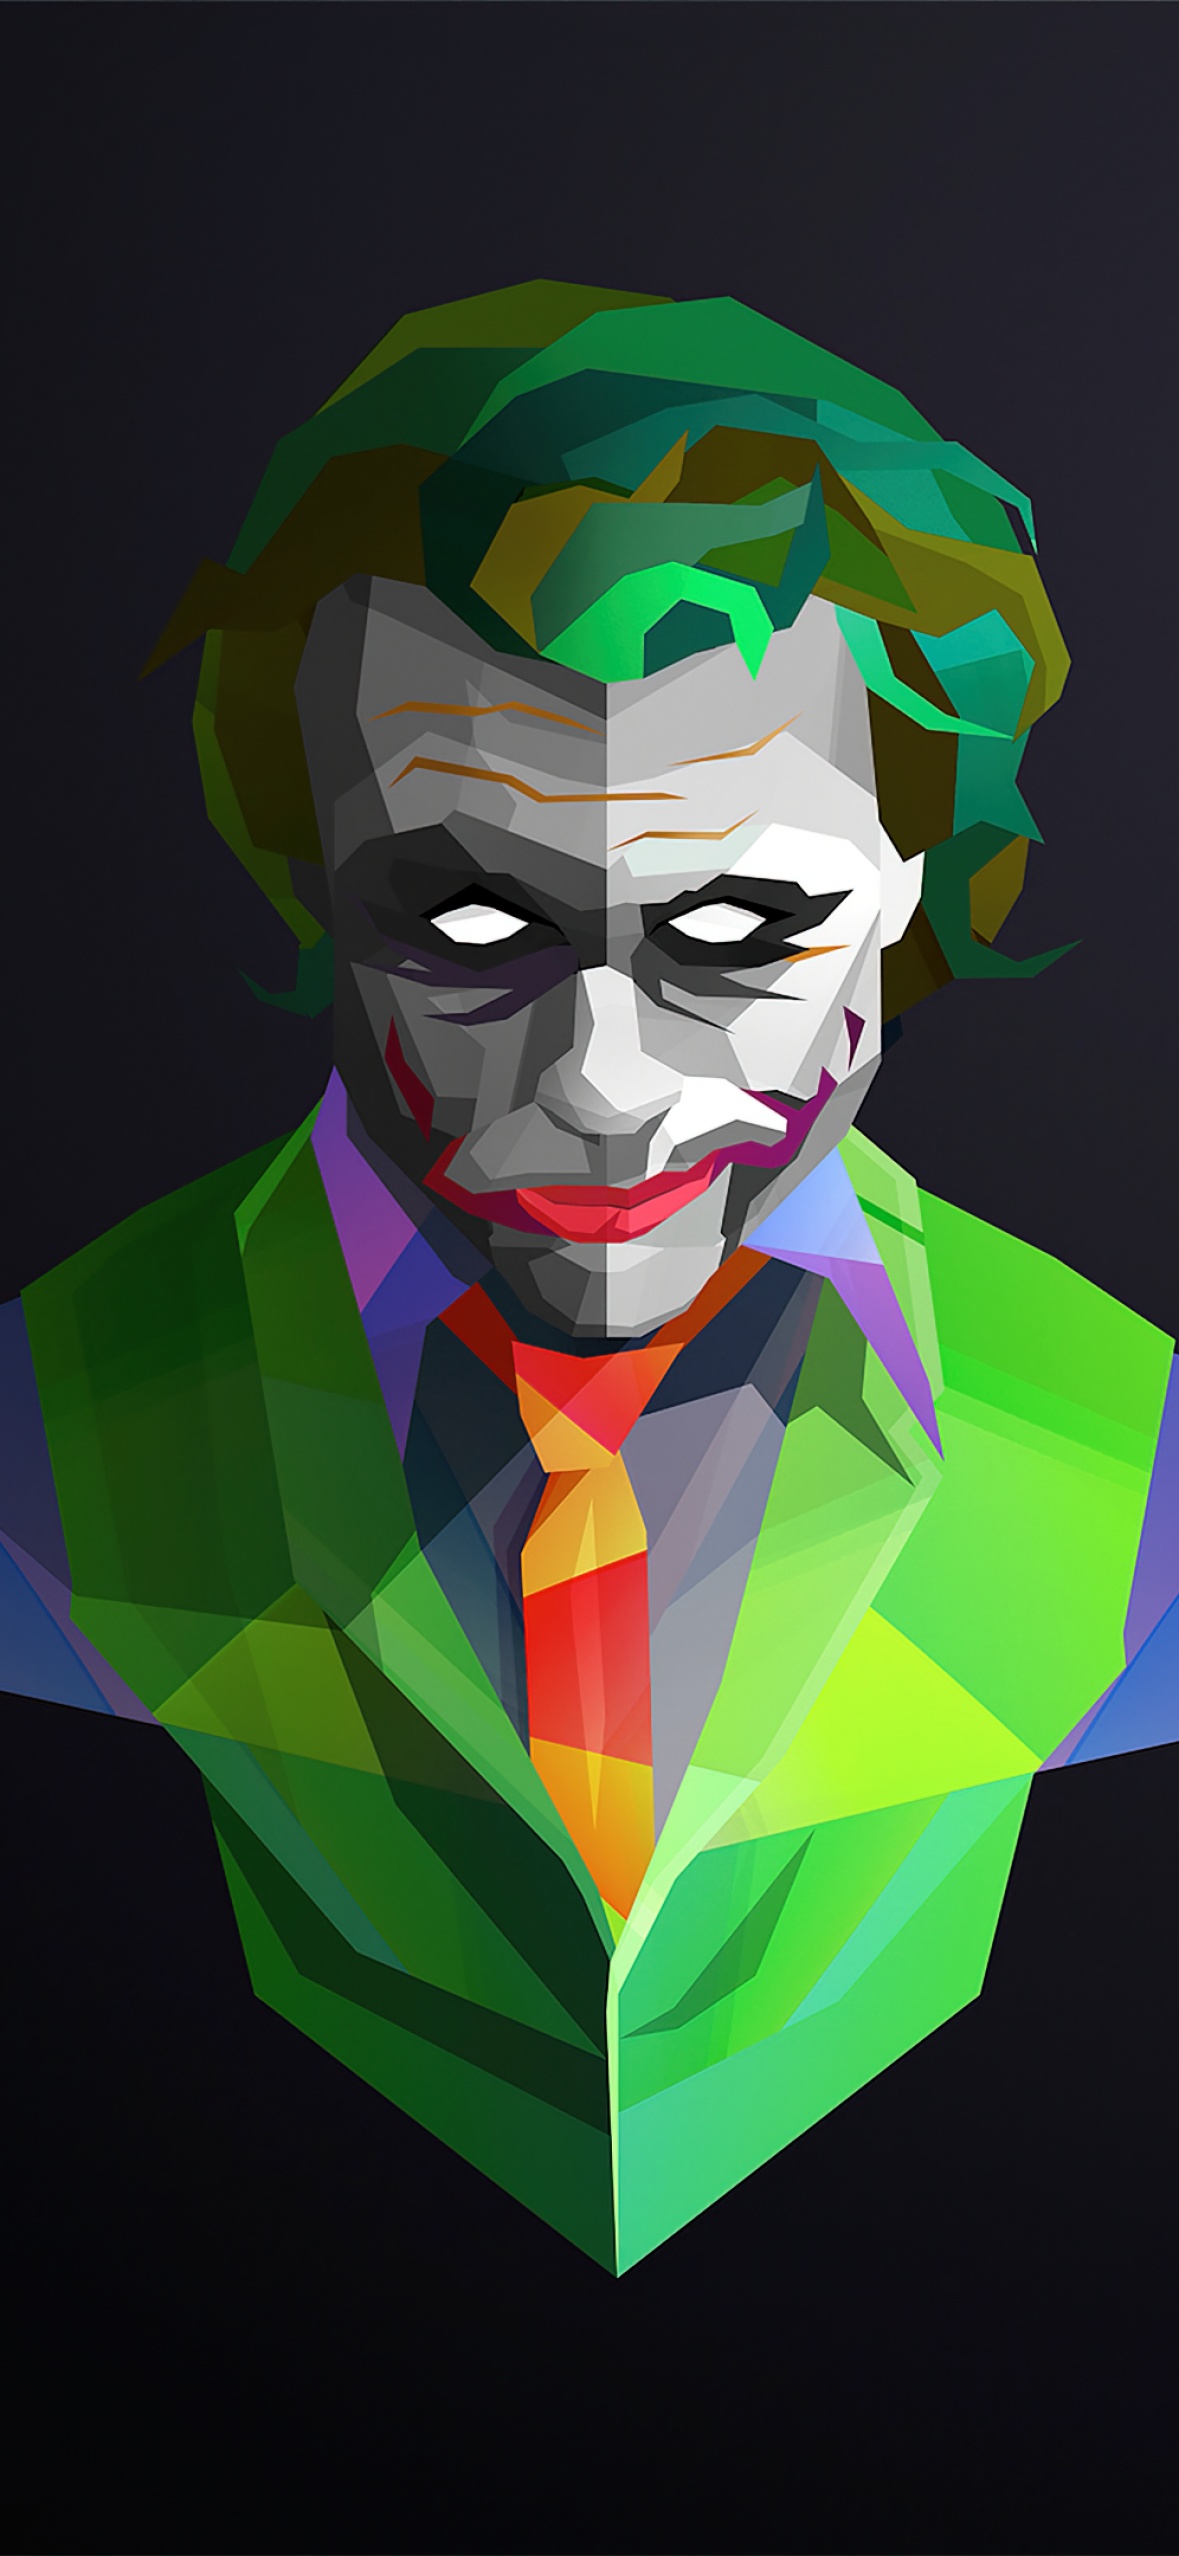 Joker Wallpapers (14+ images inside)